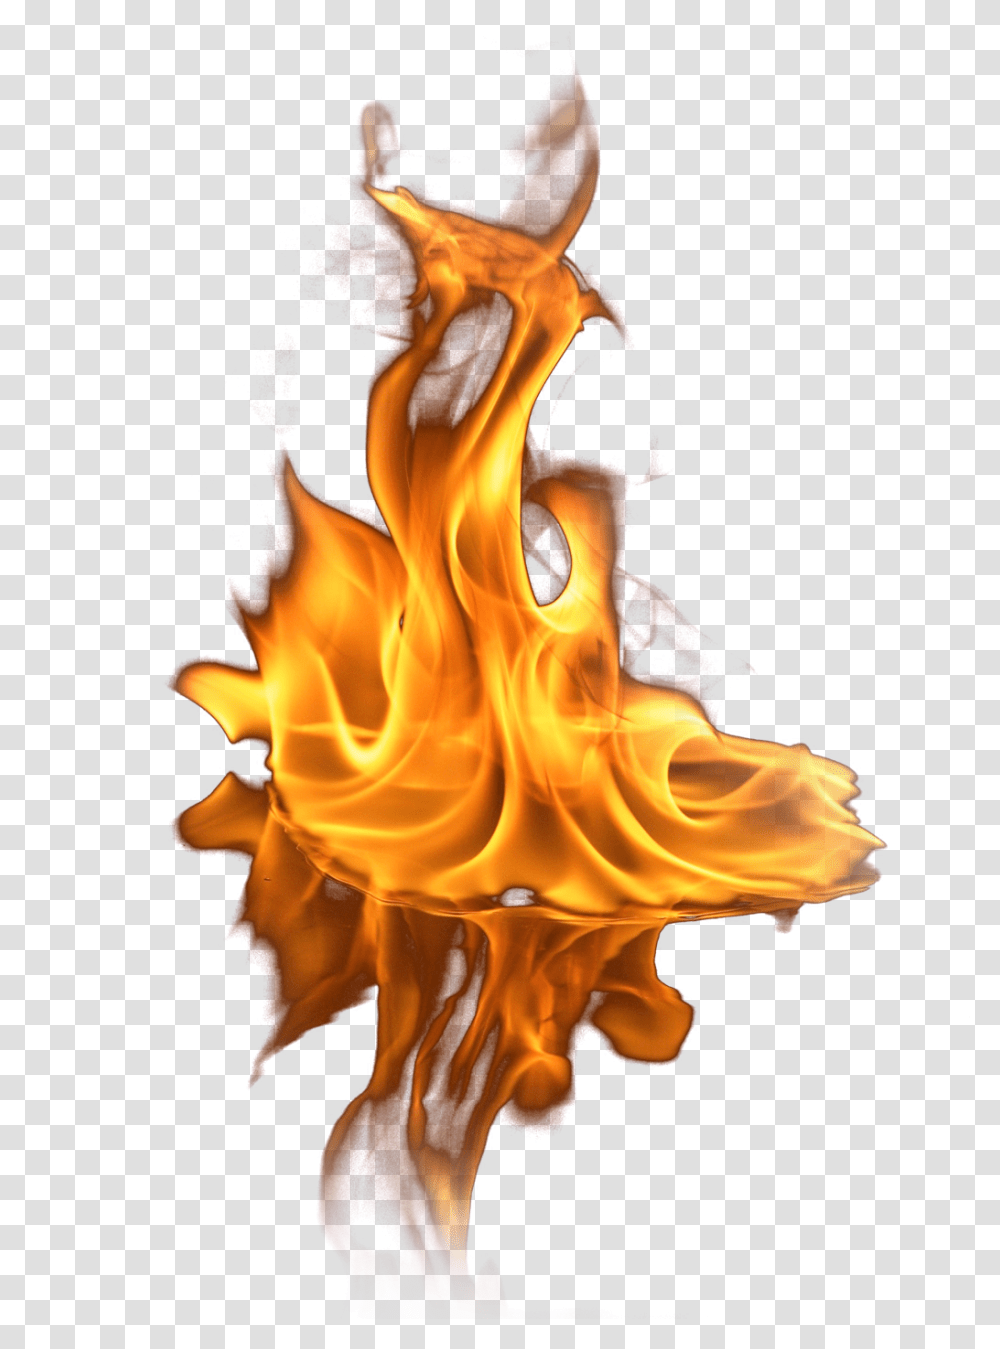 Fire Images Flames Clipart Fire Flame, Bonfire, Person, Human Transparent Png